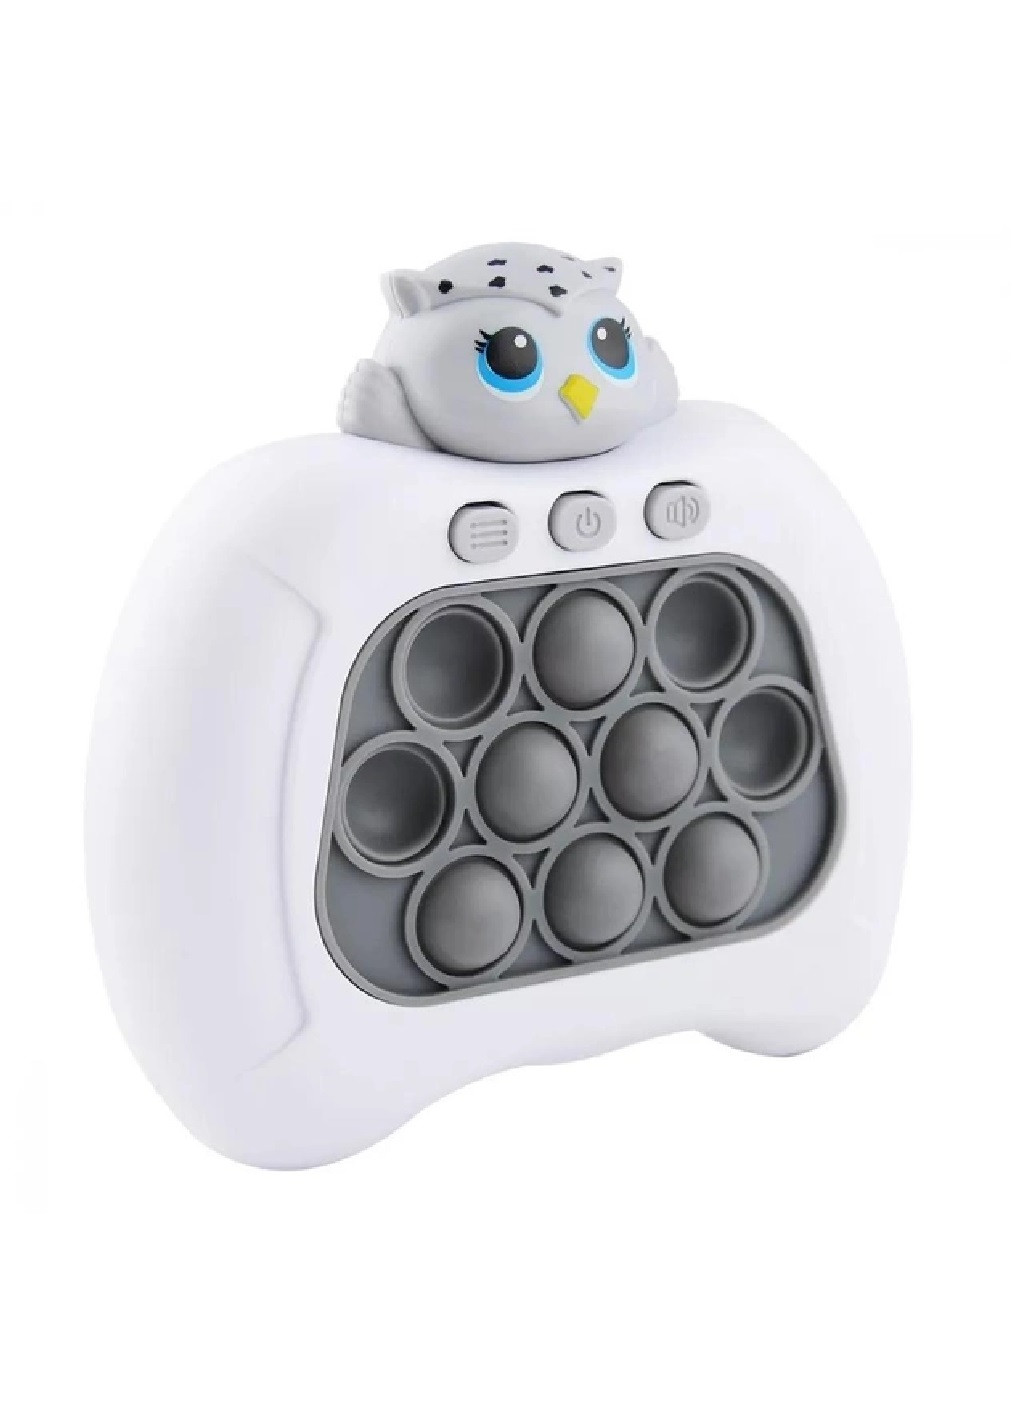 Електронна іграшка консоль головоломка для дітей малюків з ямочками бульбашками на батарейках (475880-Prob) Сова Unbranded (273378363)